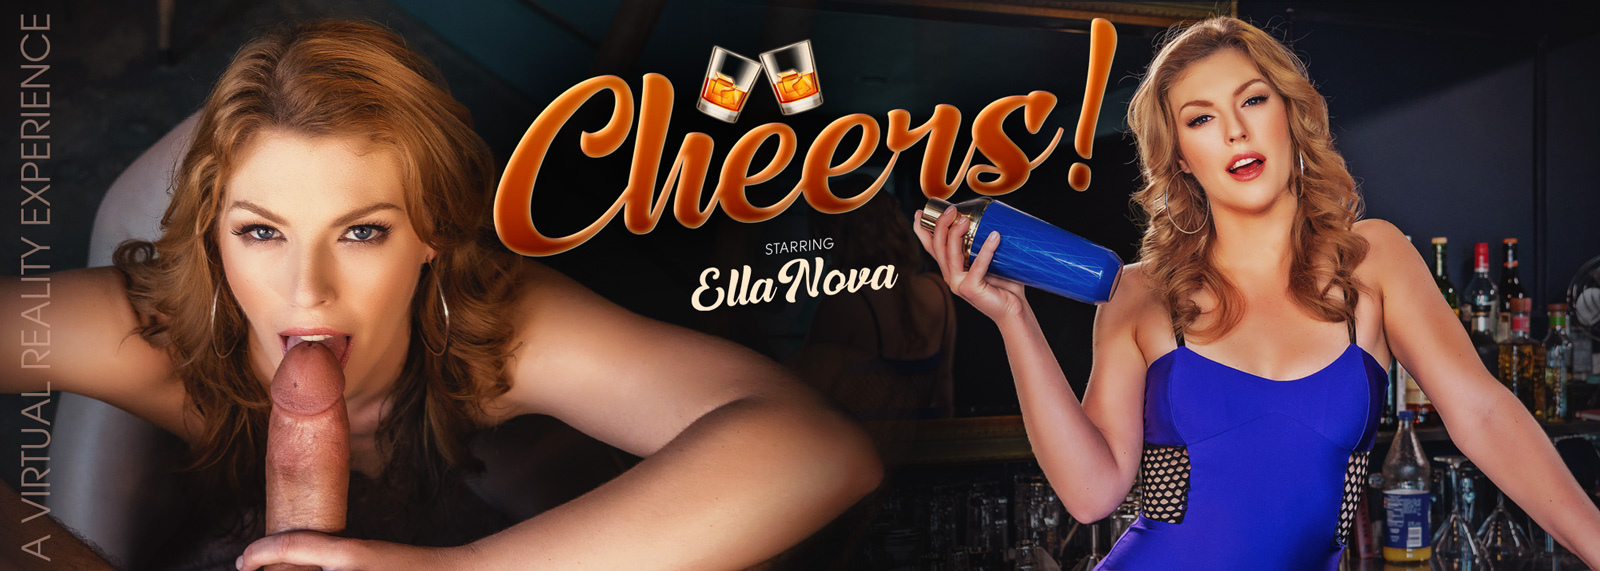 Cheers! with Ella Nova  Slideshow